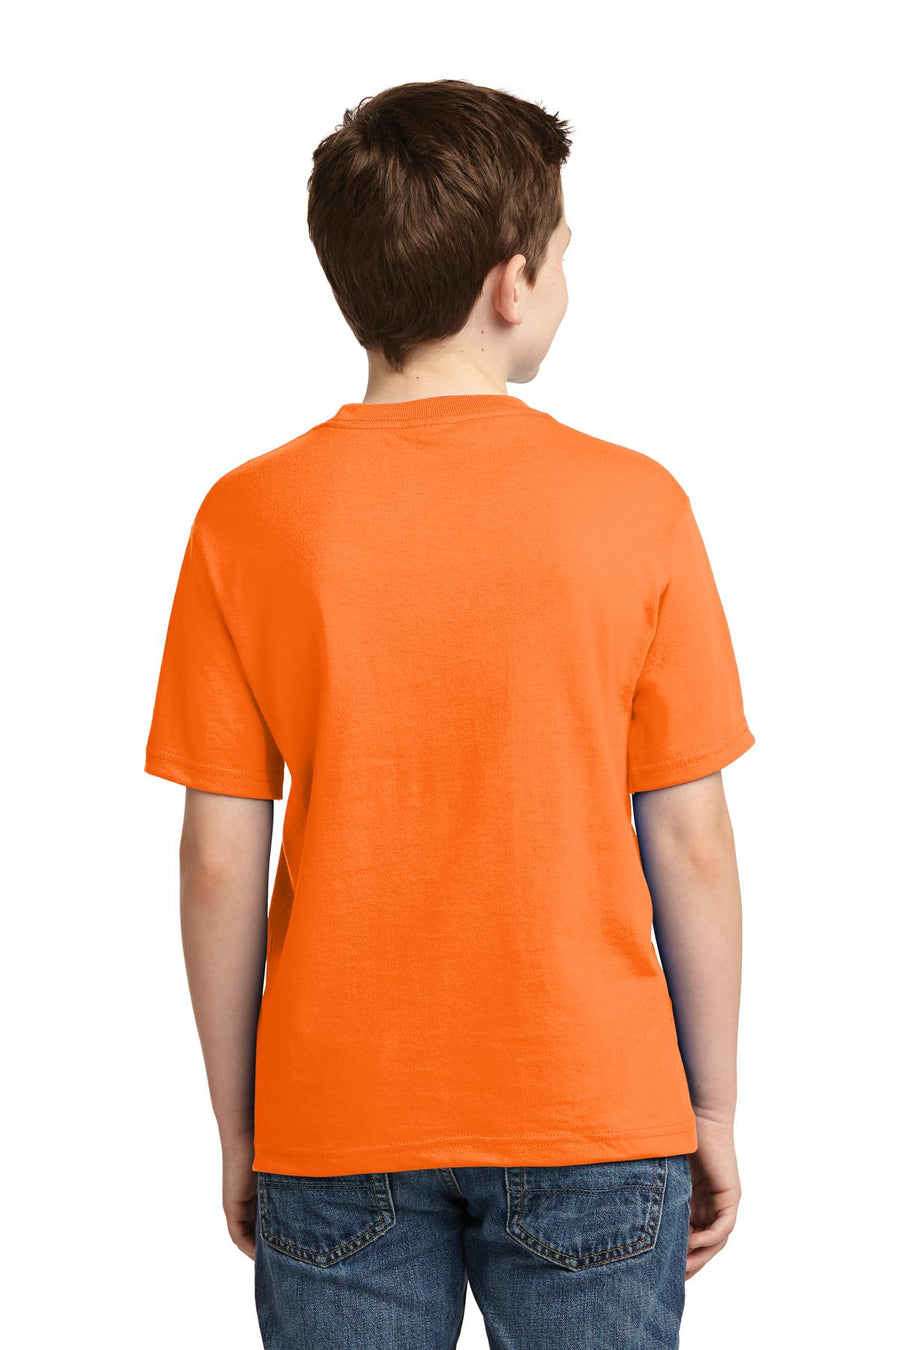 29B-Safety Orange-back_model